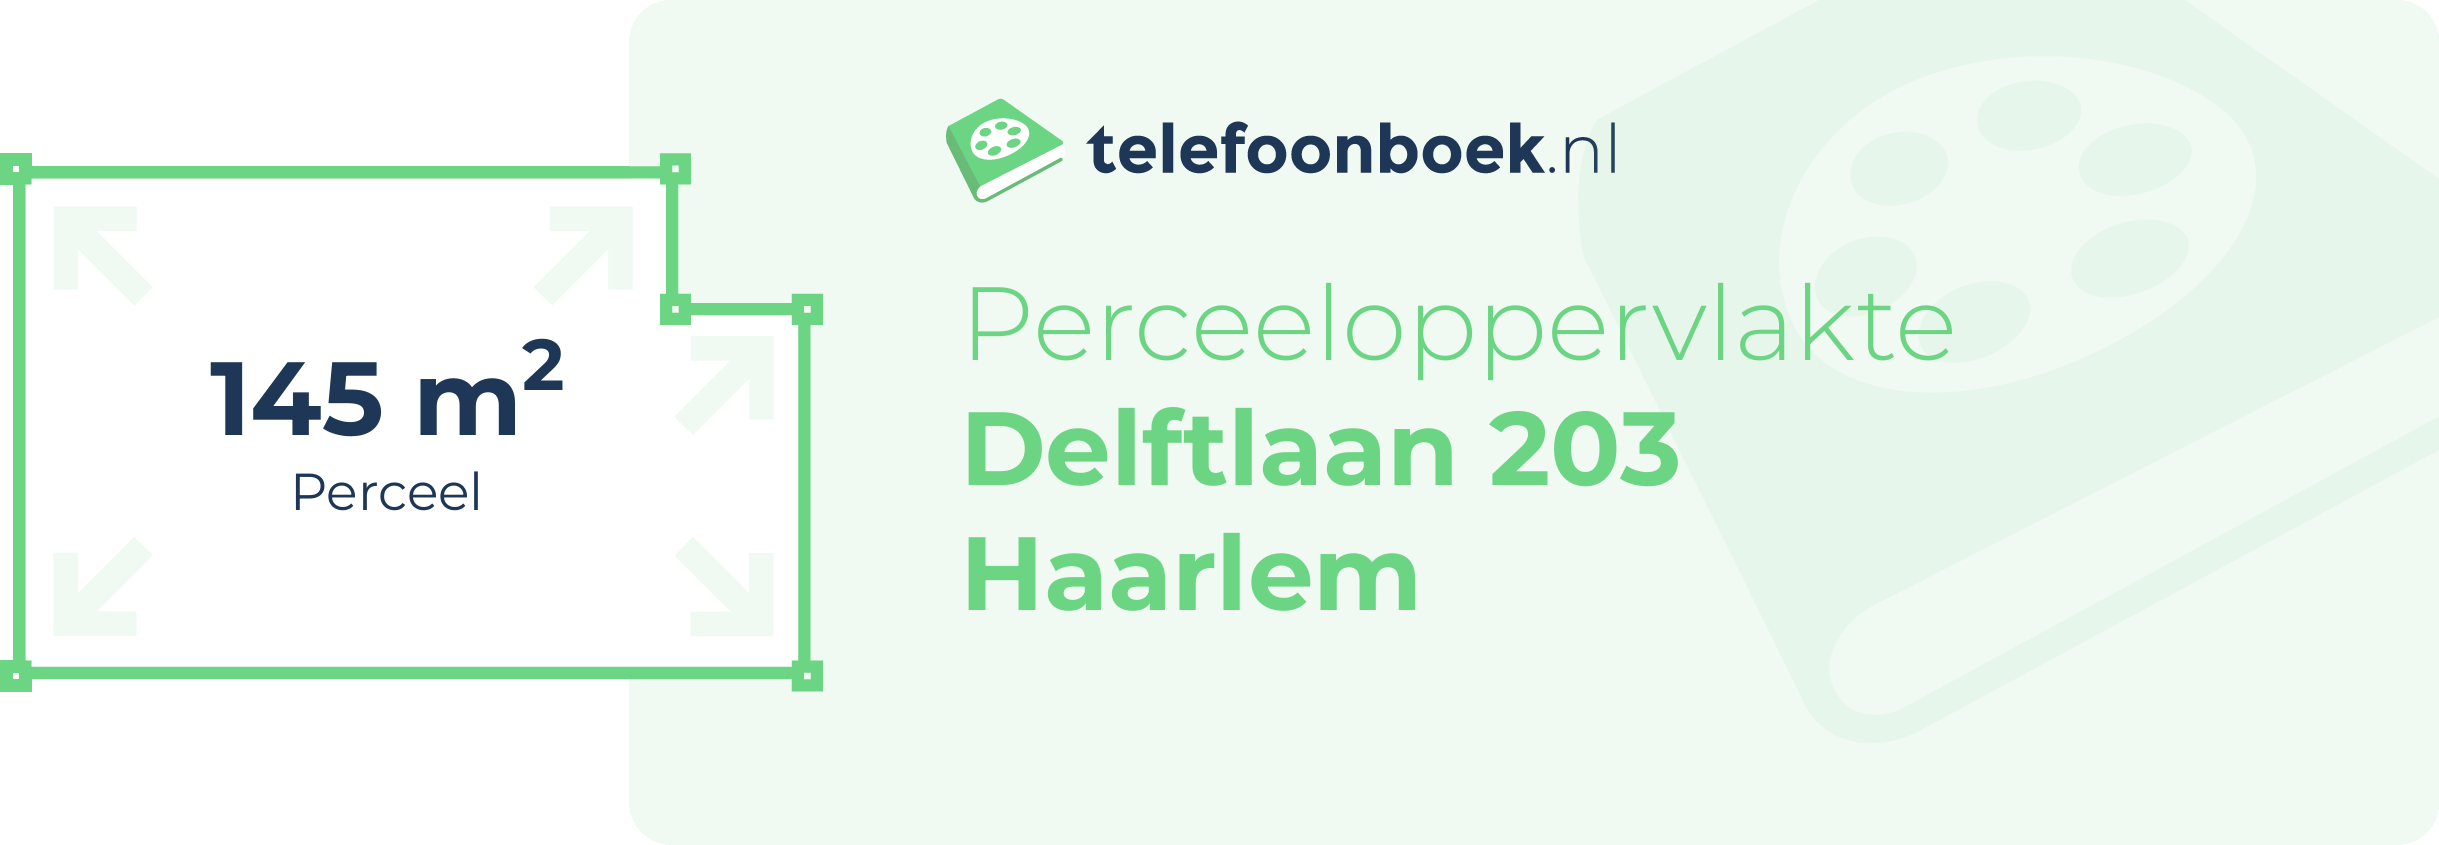 Perceeloppervlakte Delftlaan 203 Haarlem